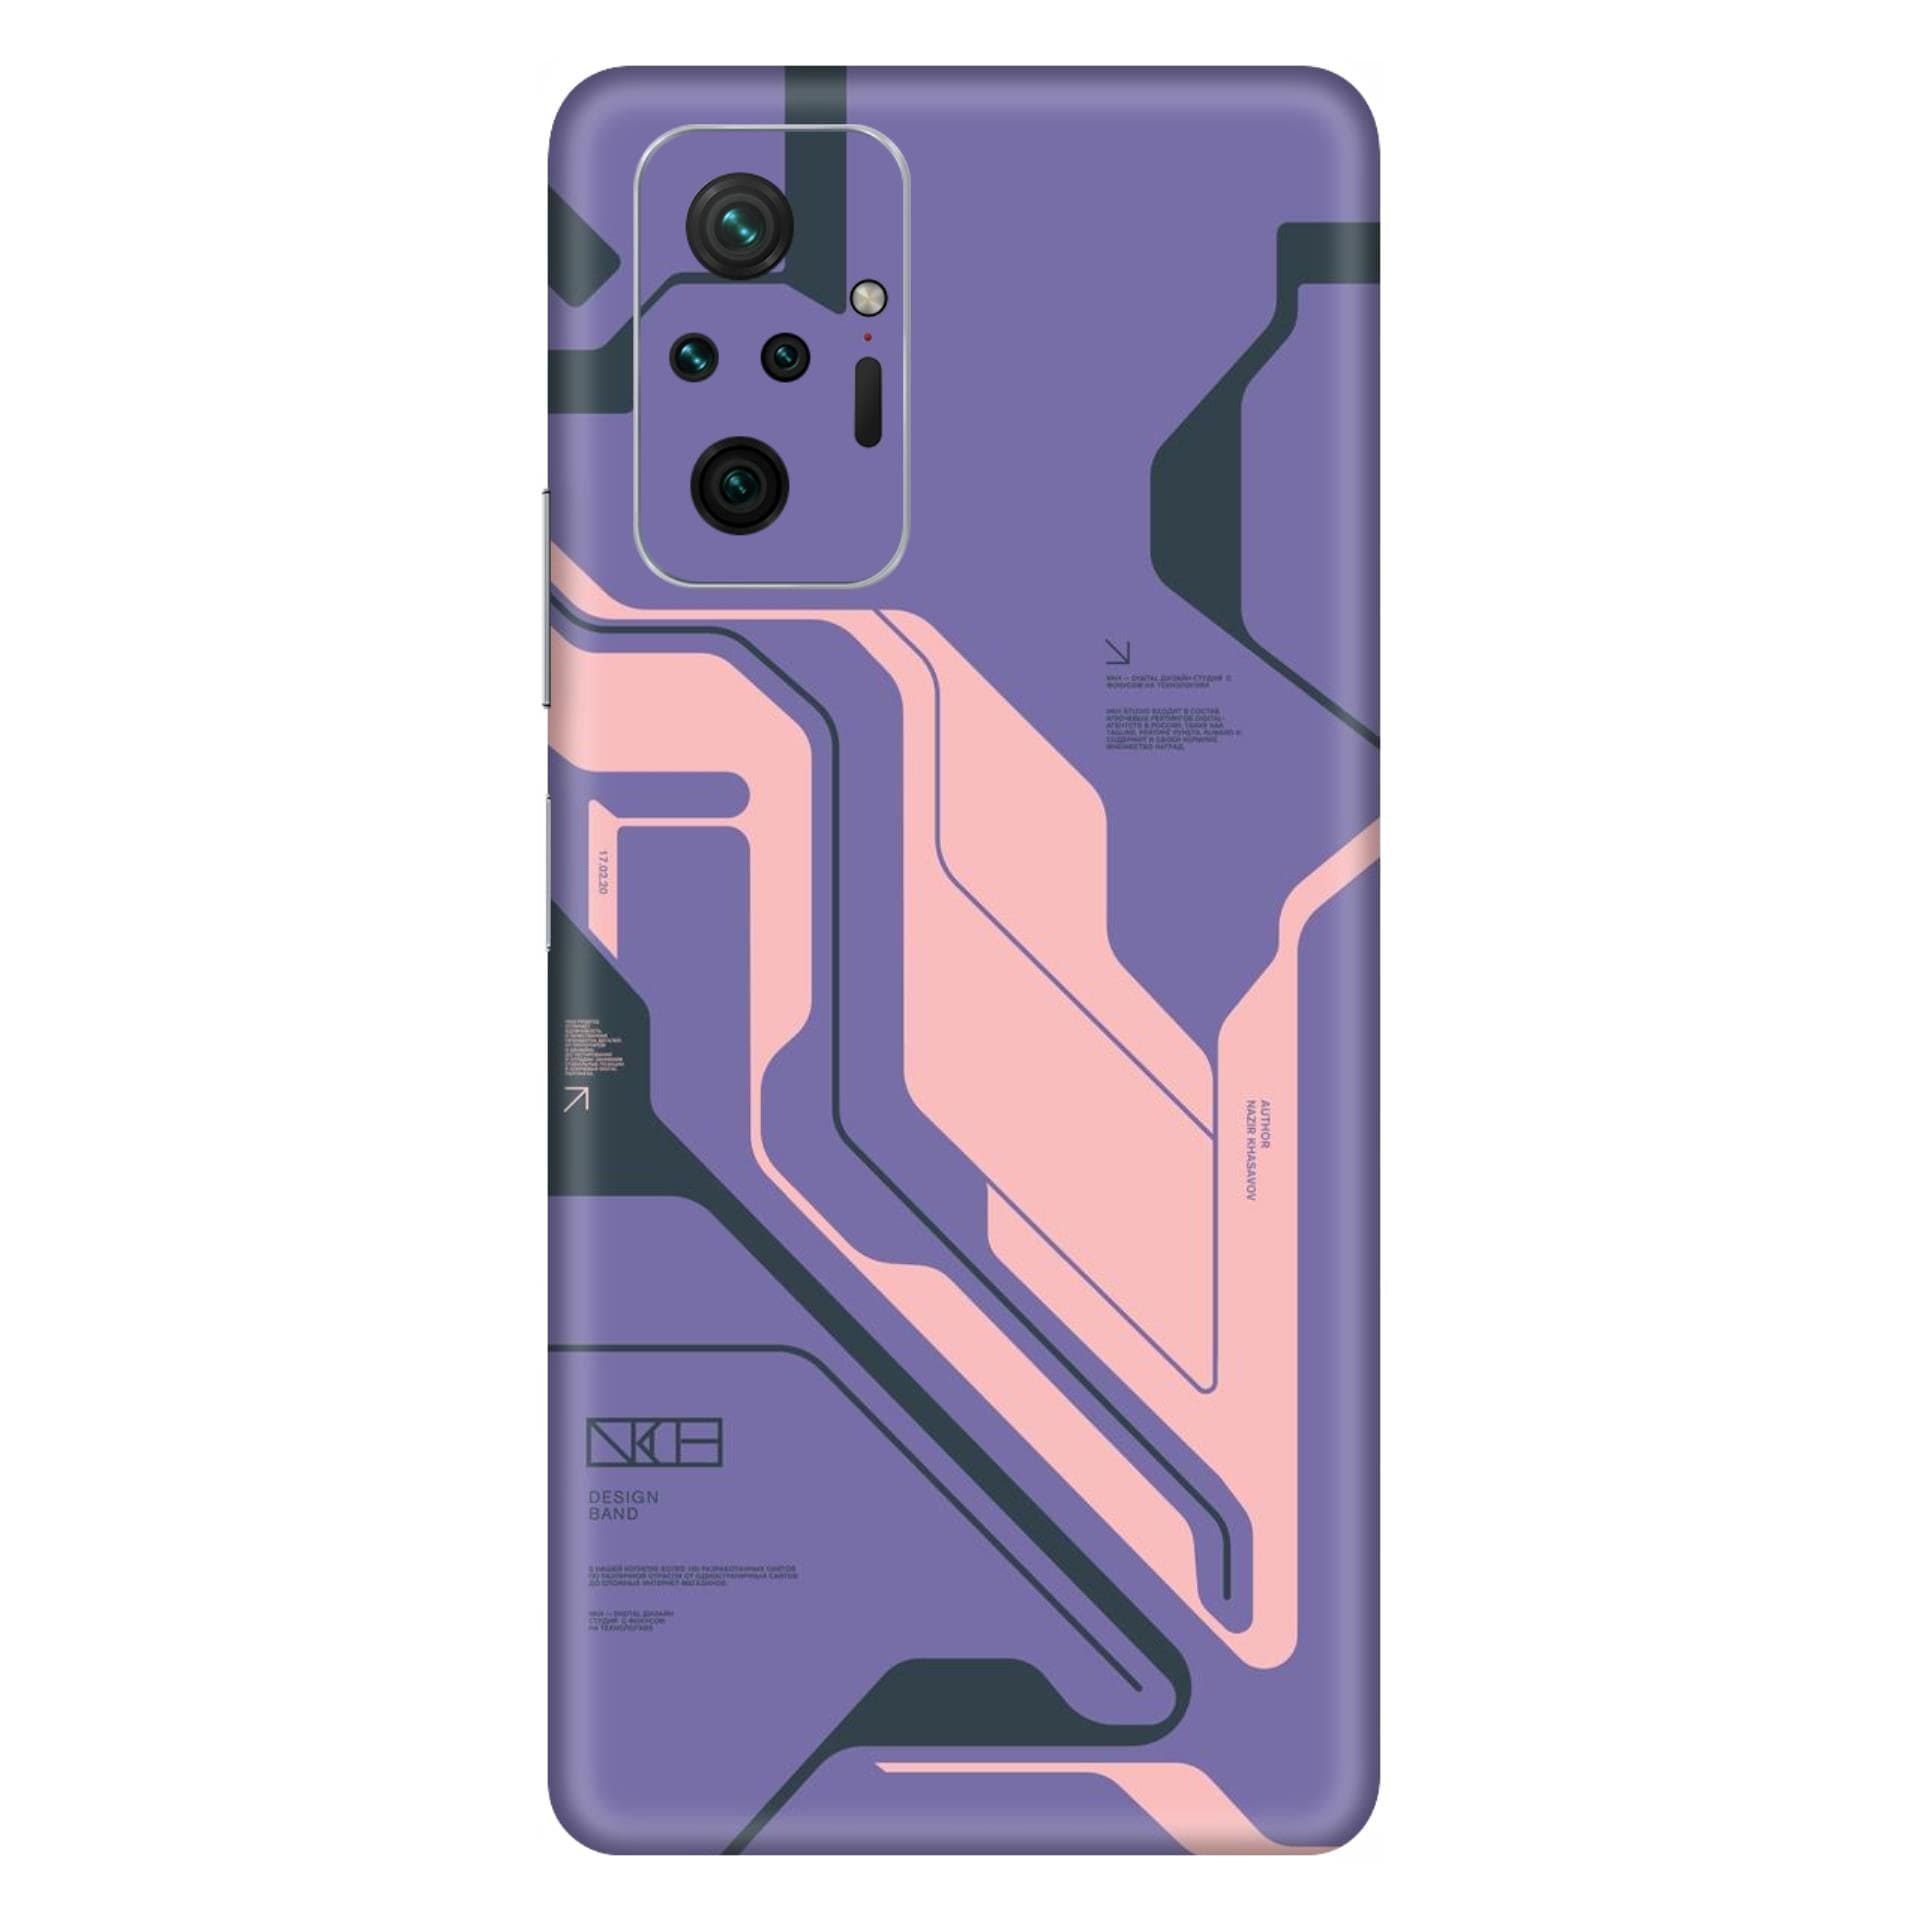 Redmi Note 10 Pro Max Purple Cyberpunk skins